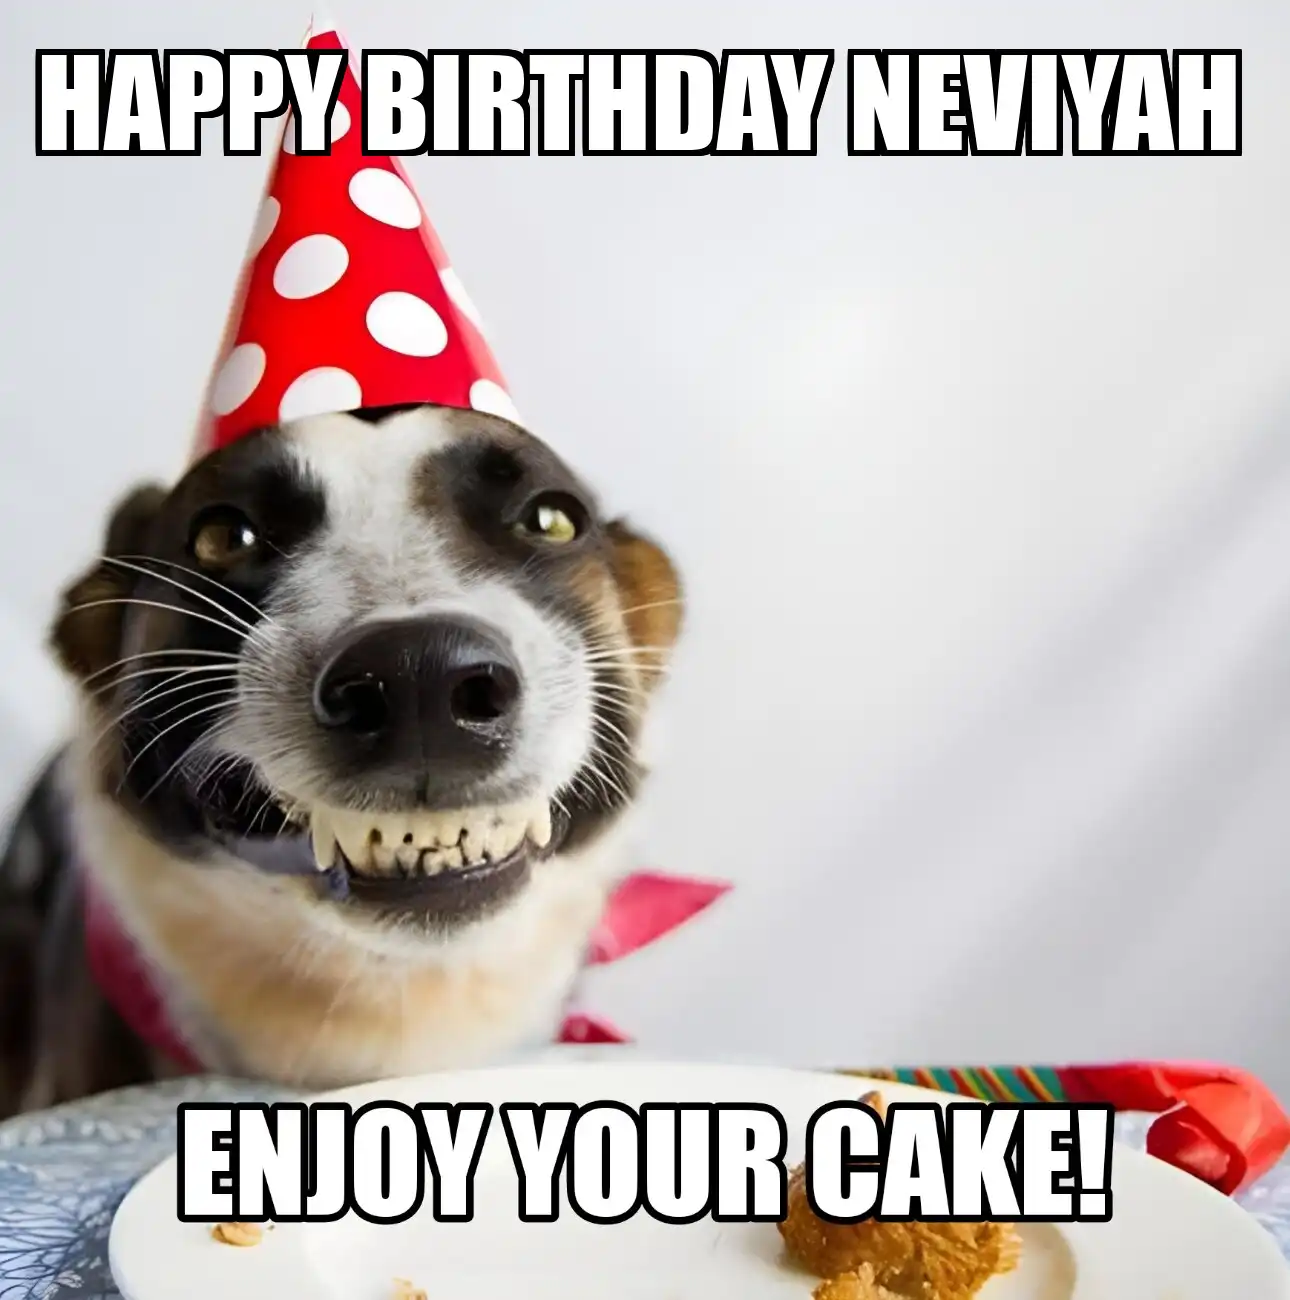 Happy Birthday Neviyah Enjoy Your Cake Dog Meme